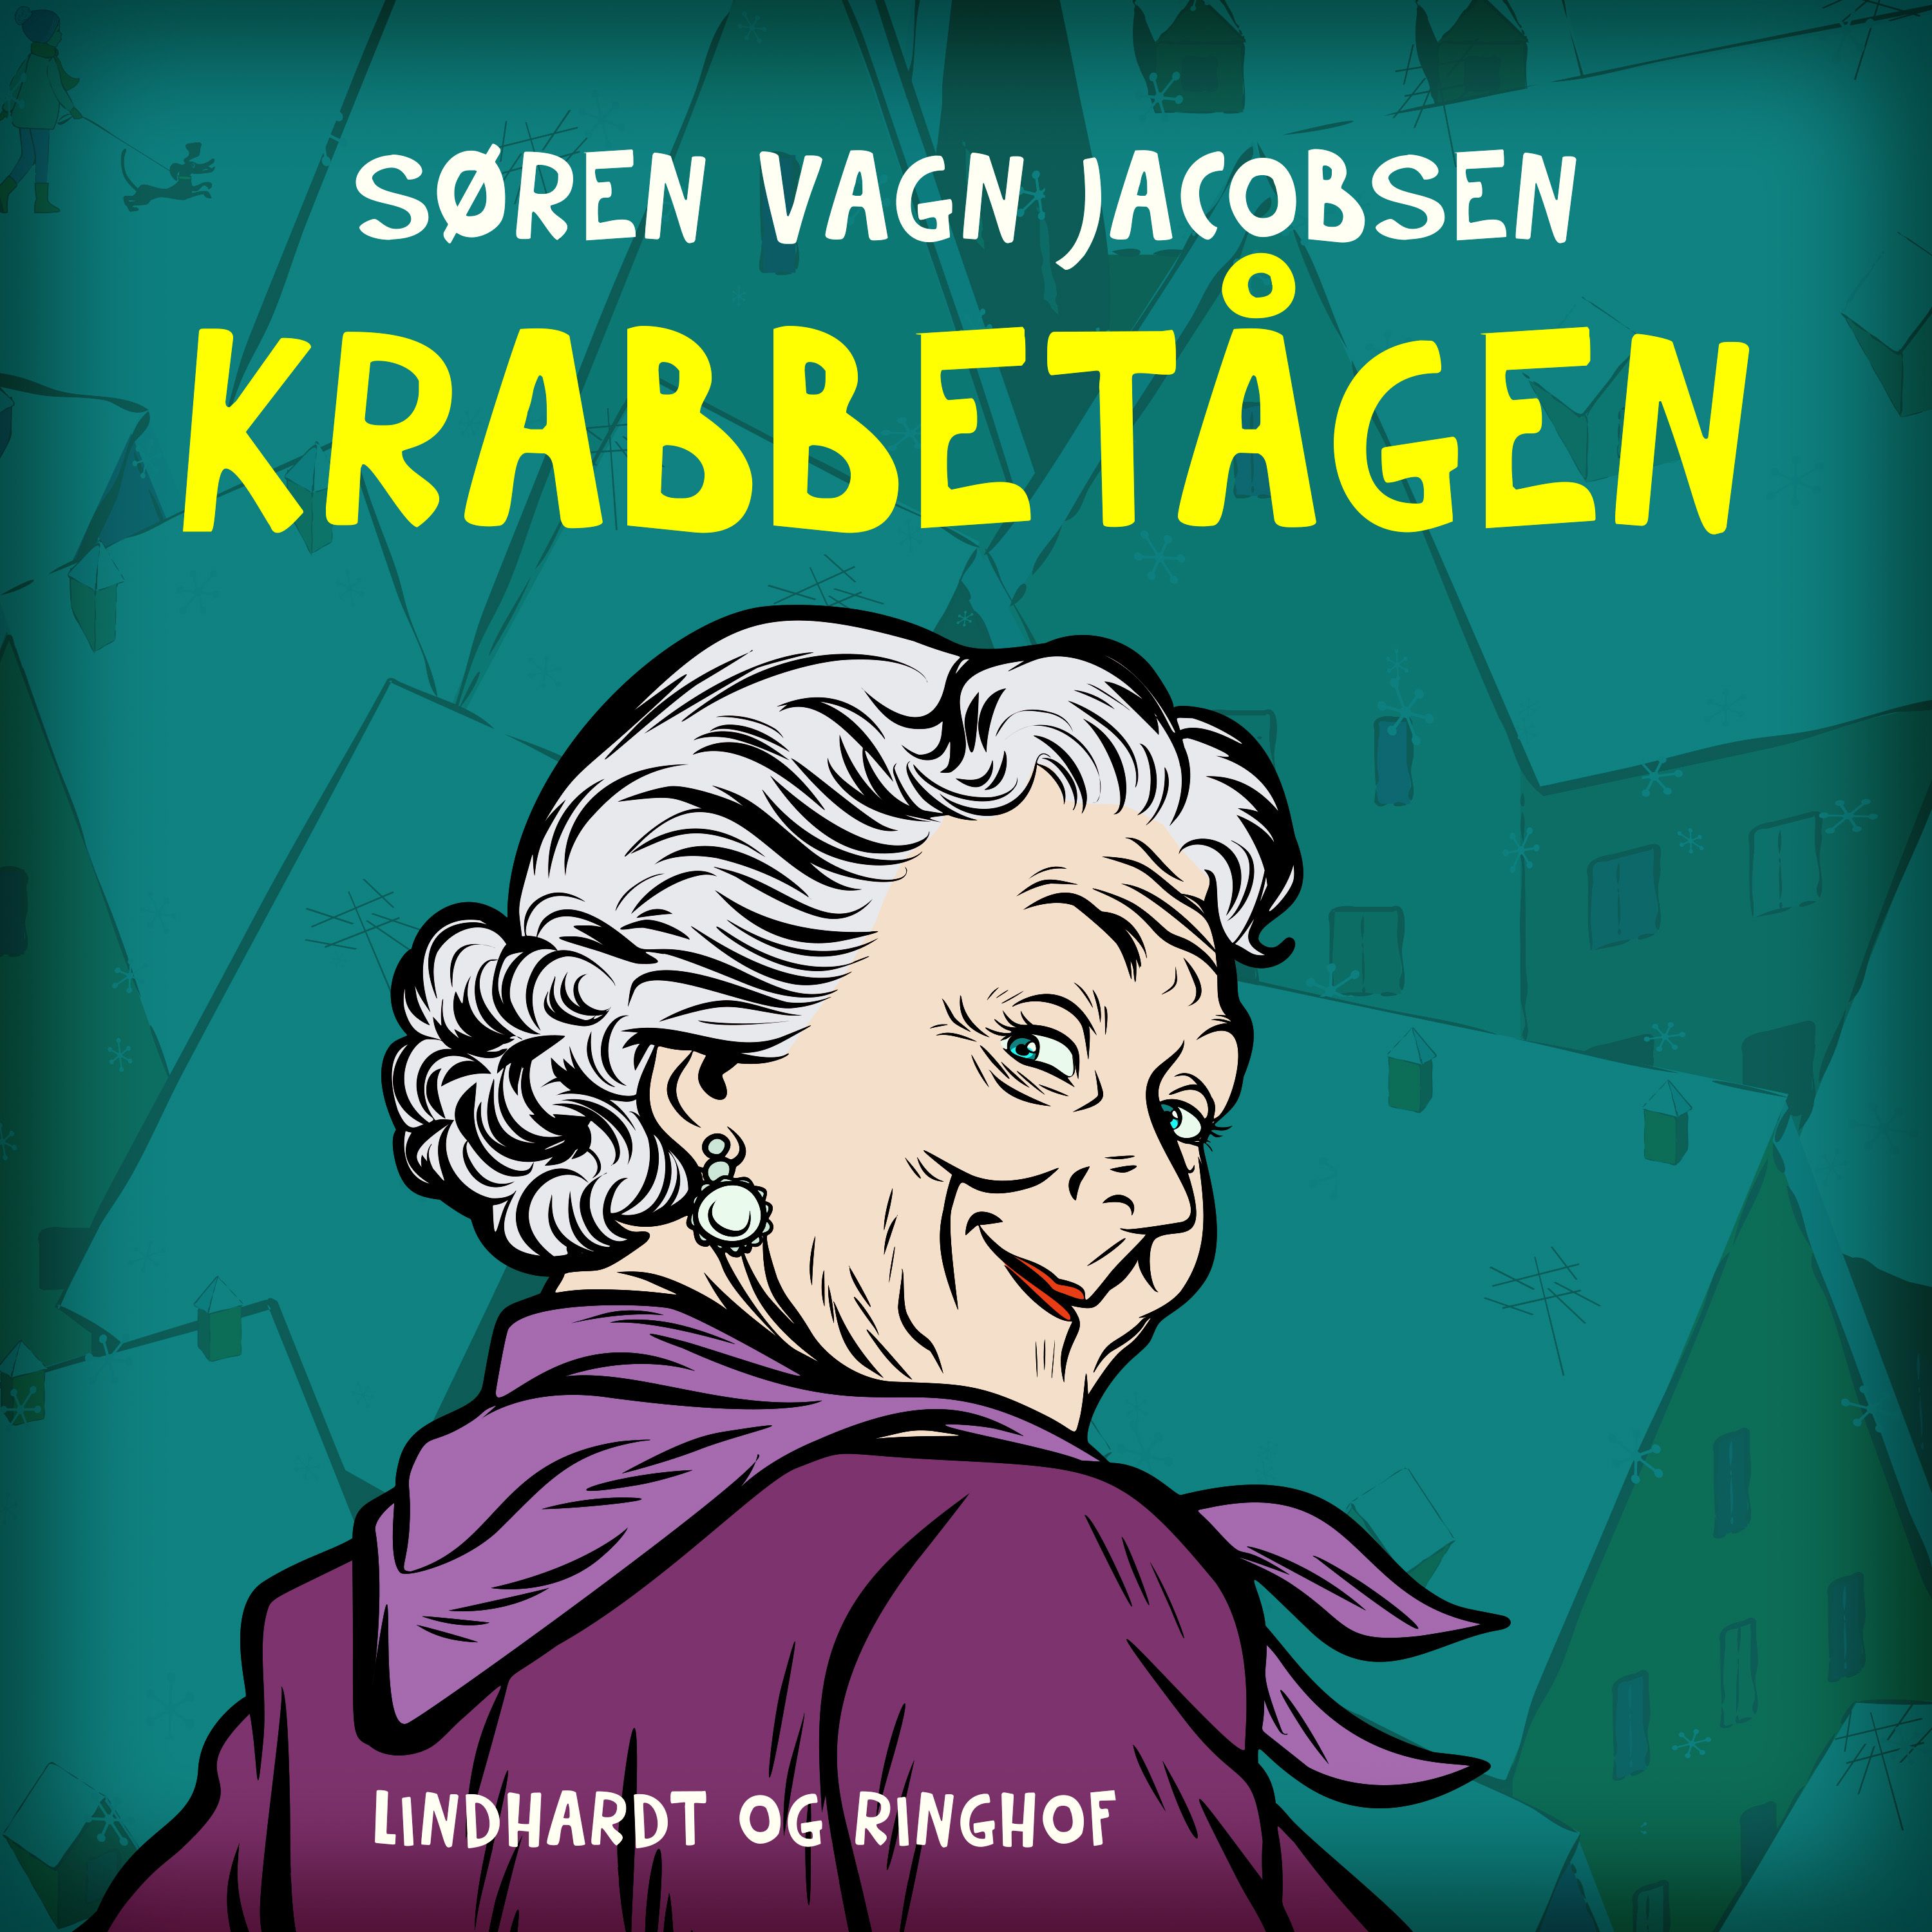 Krabbetågen, lydbog af Søren vagn Jacobsen